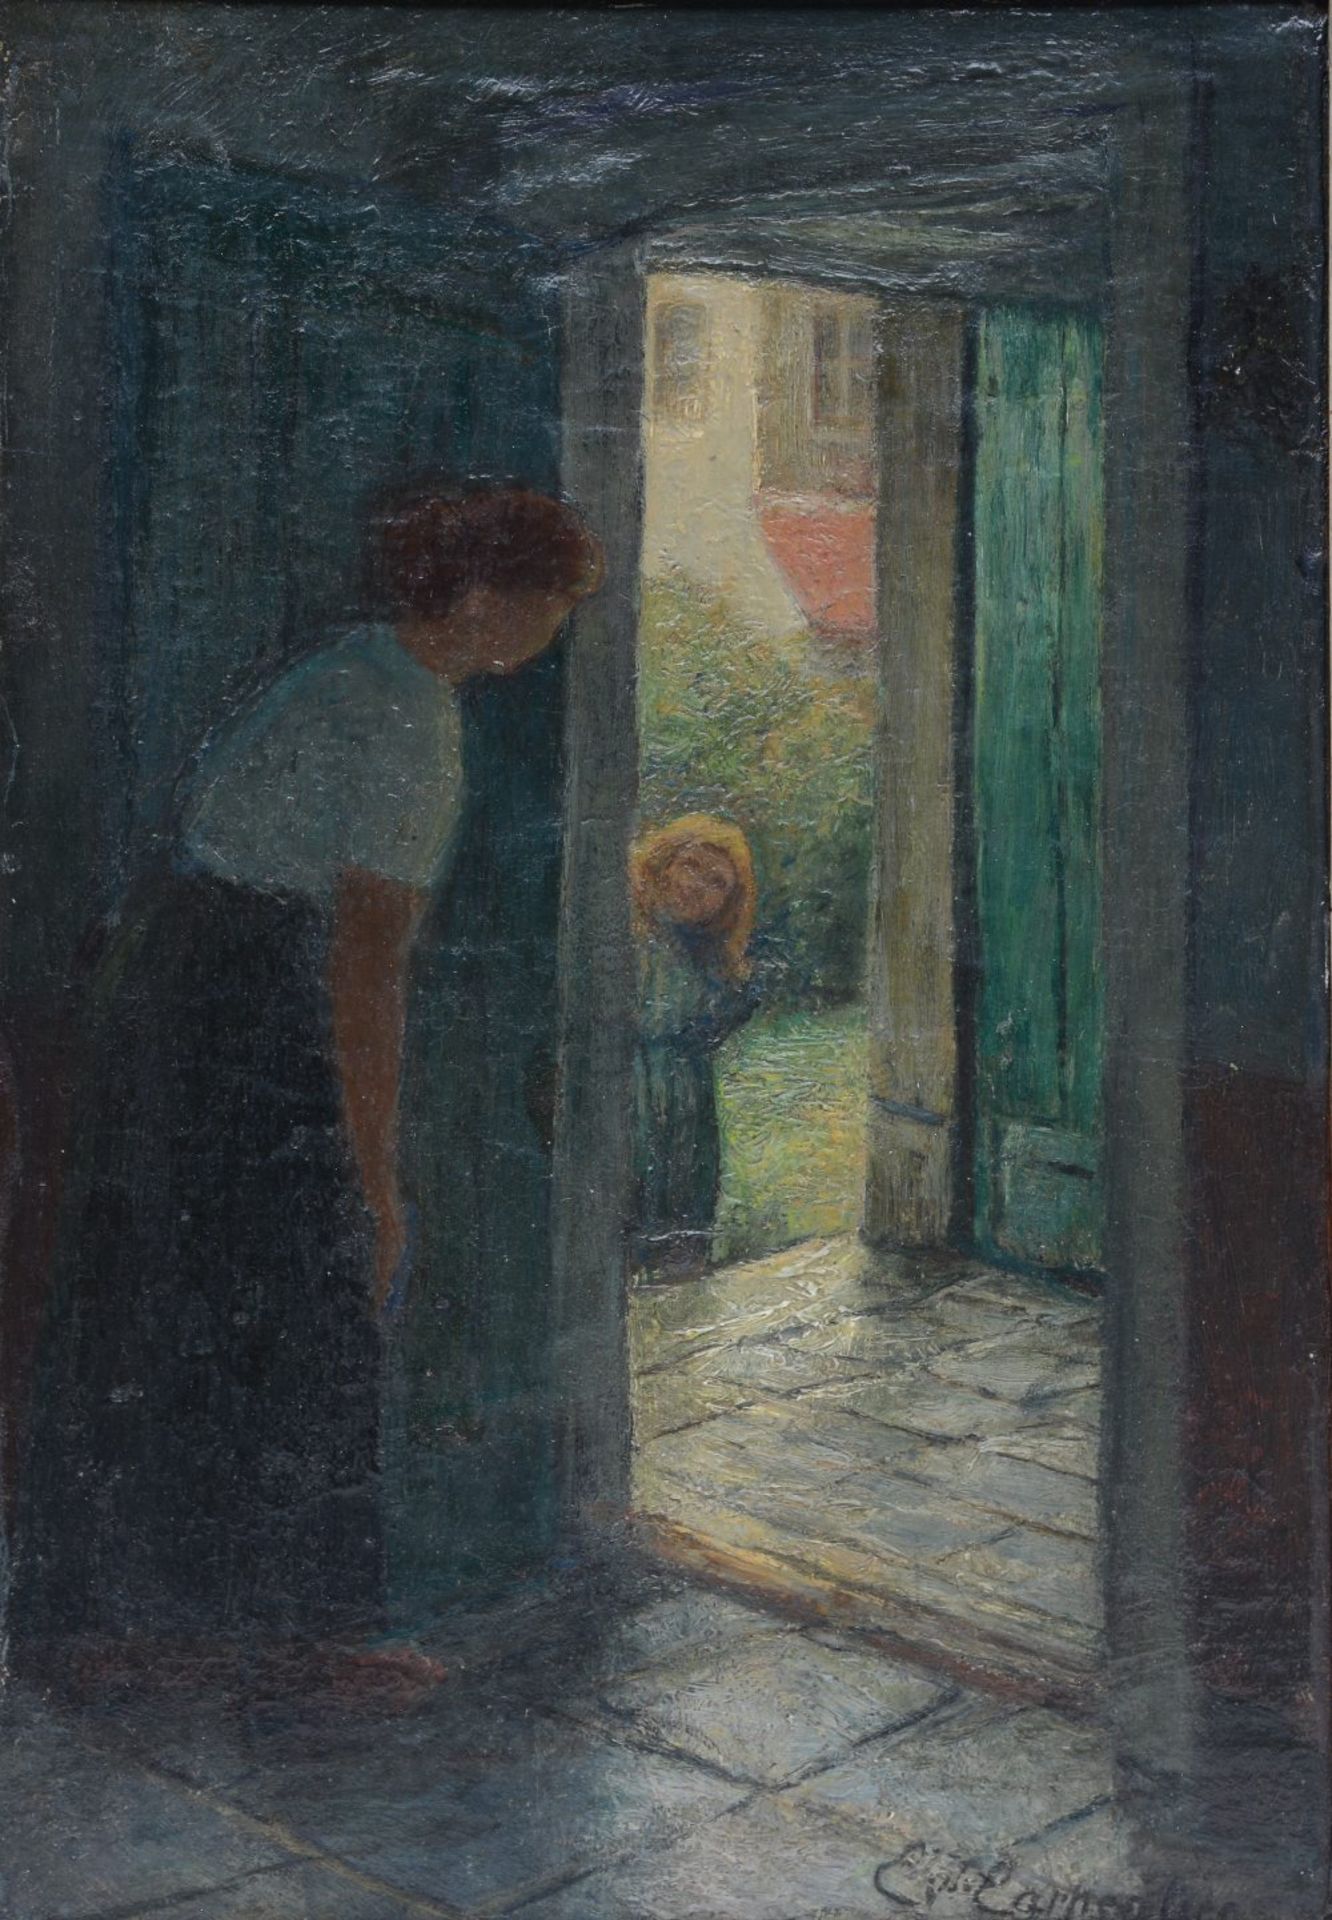 Carpentier E., 'Le retour de l'enfant' (1905), oil on canvas on board, 23 x 34 cm